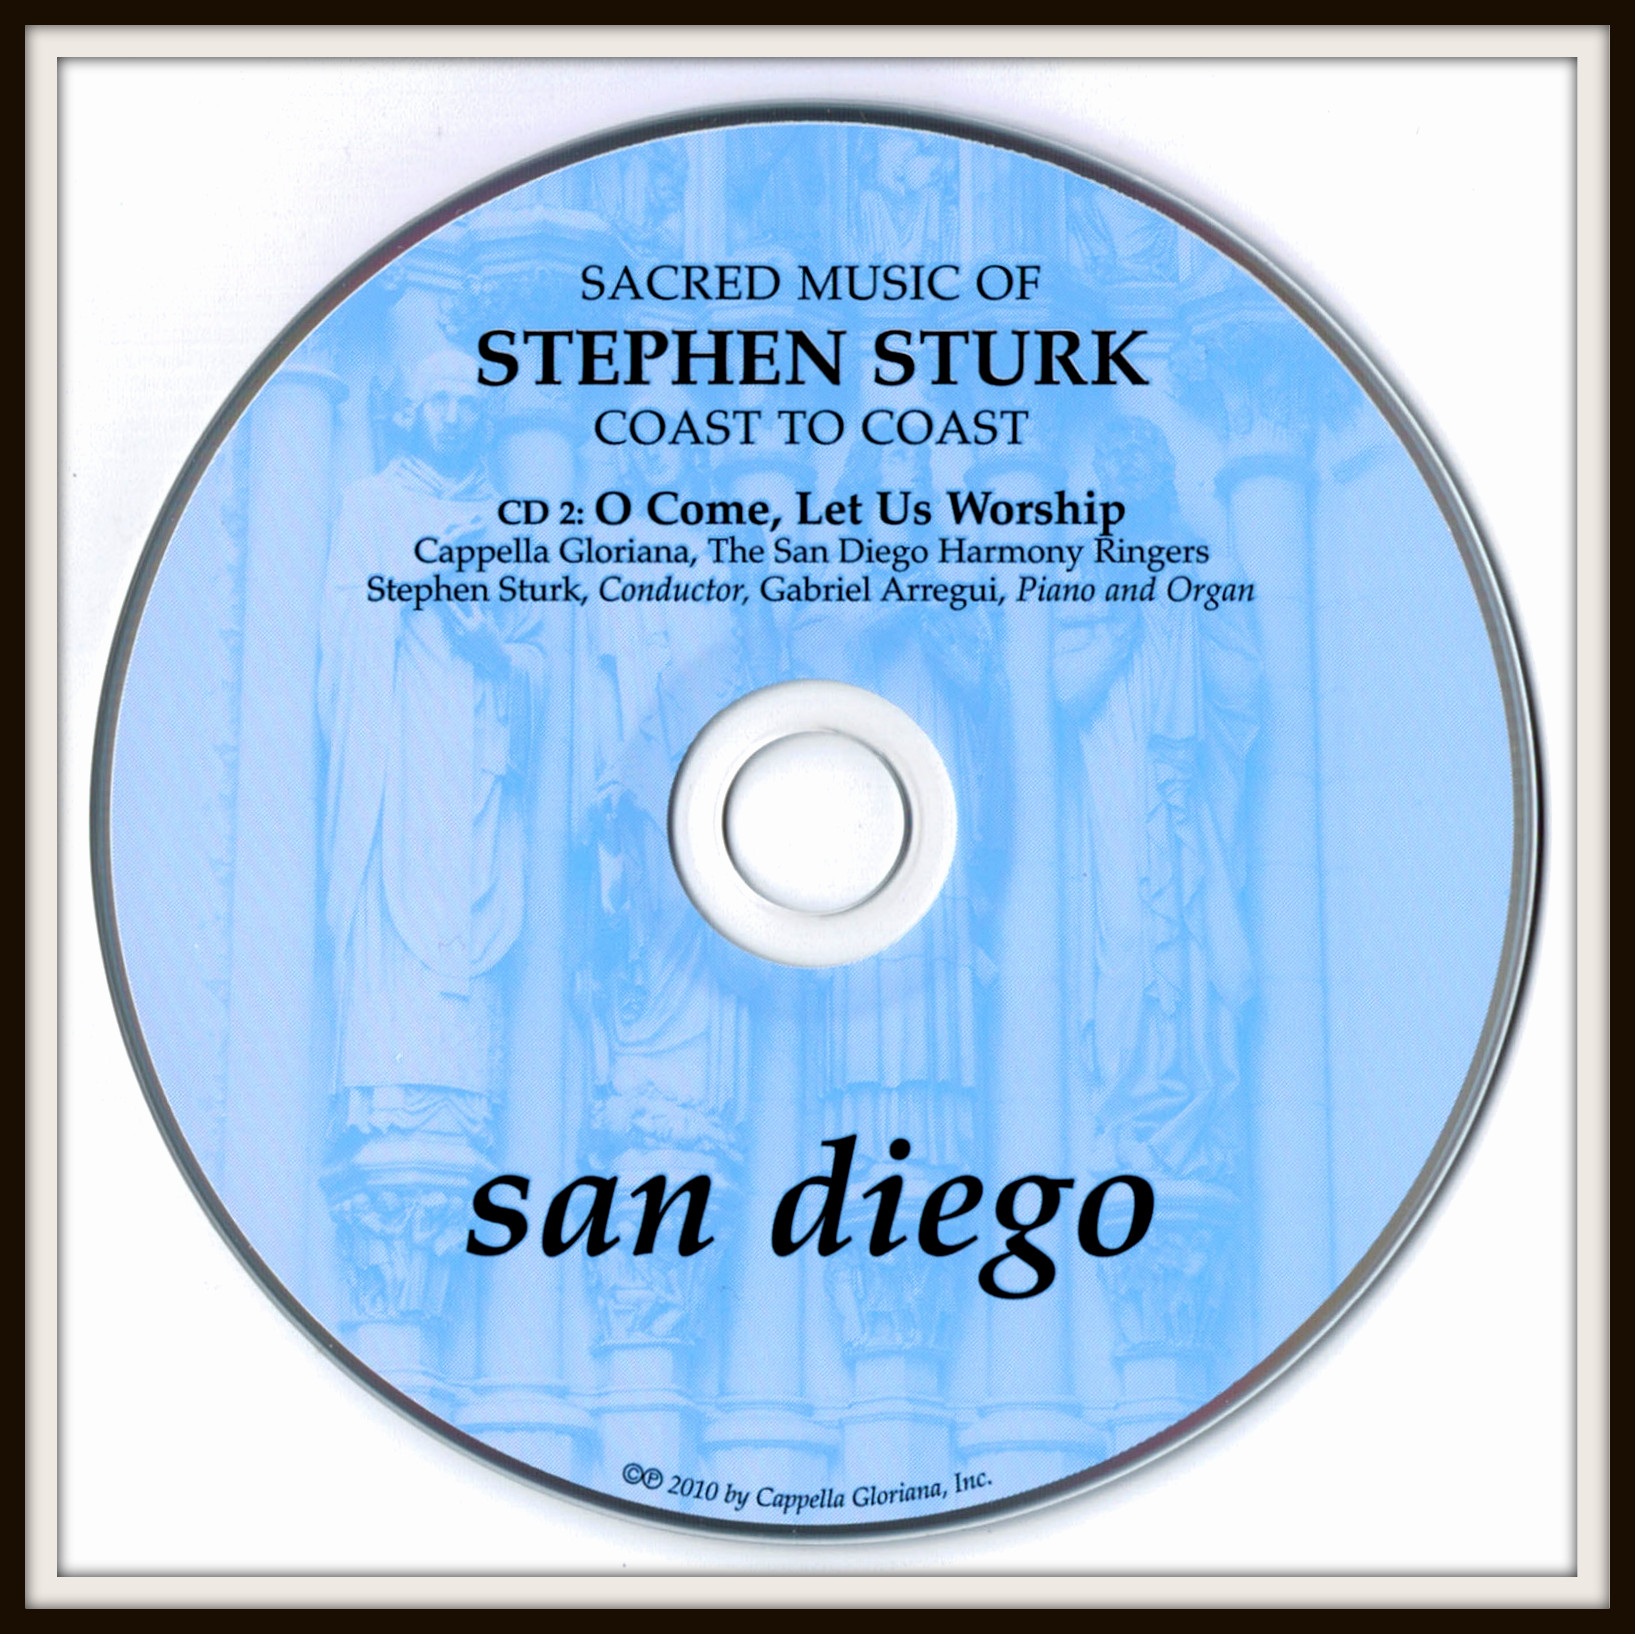 Sturks CD2 image